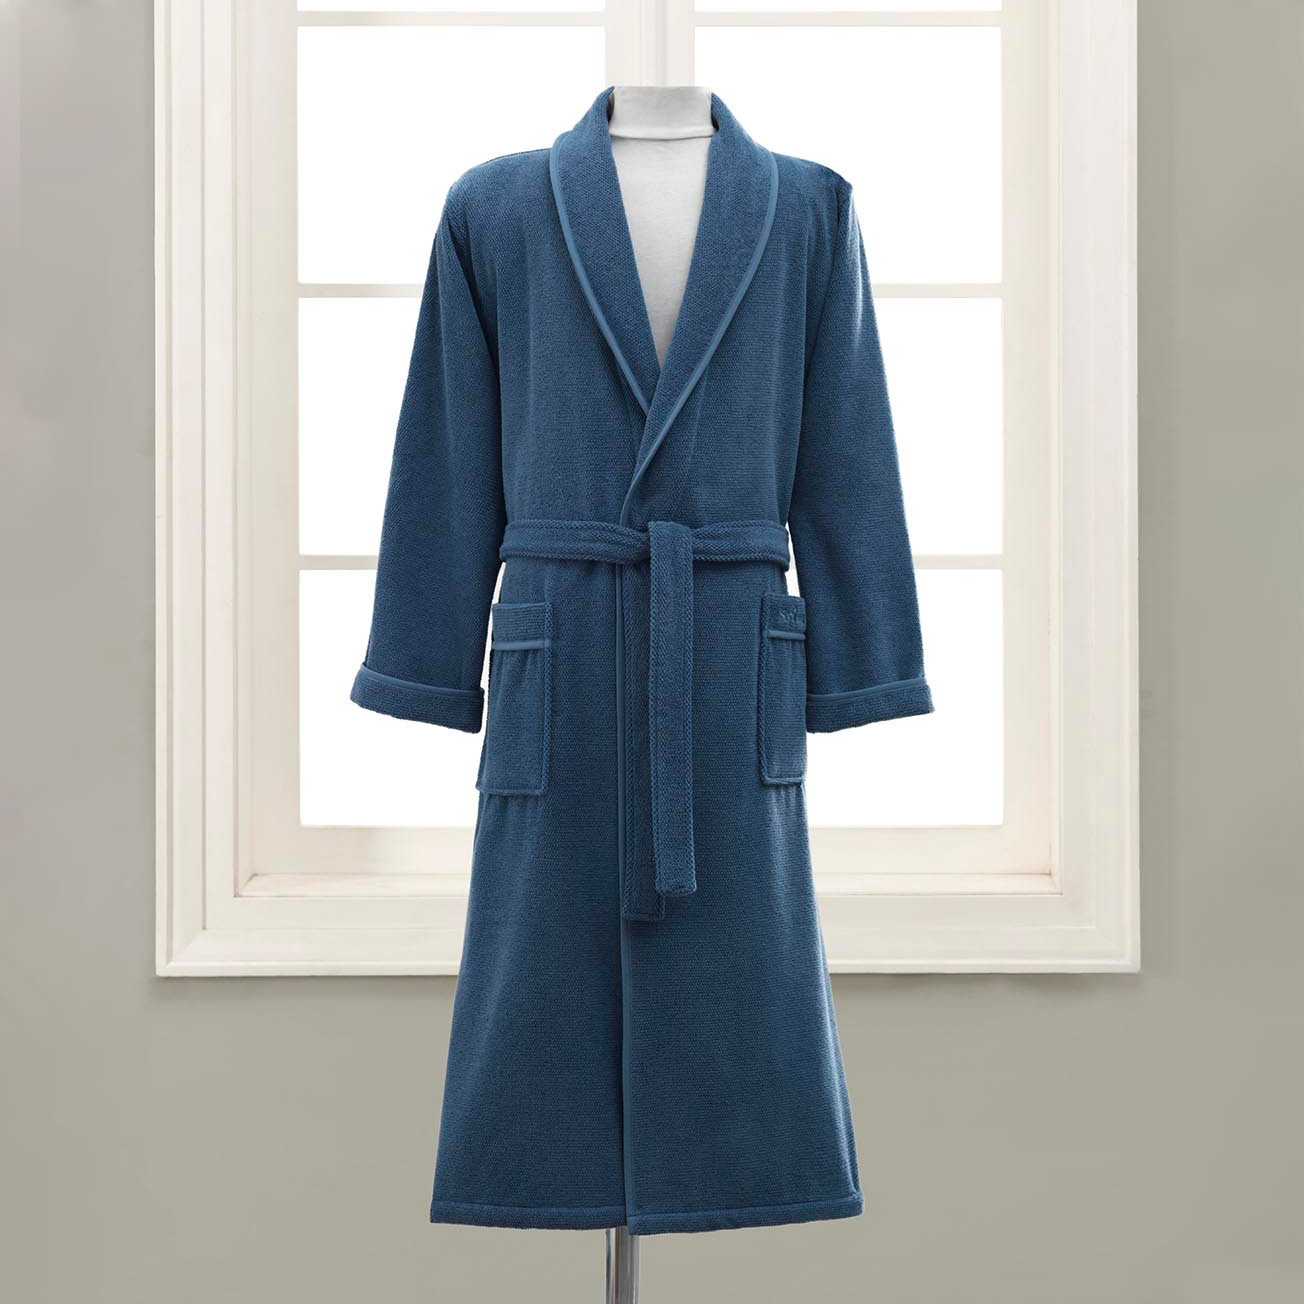 Банный халат Alena цвет: голубой (XL)